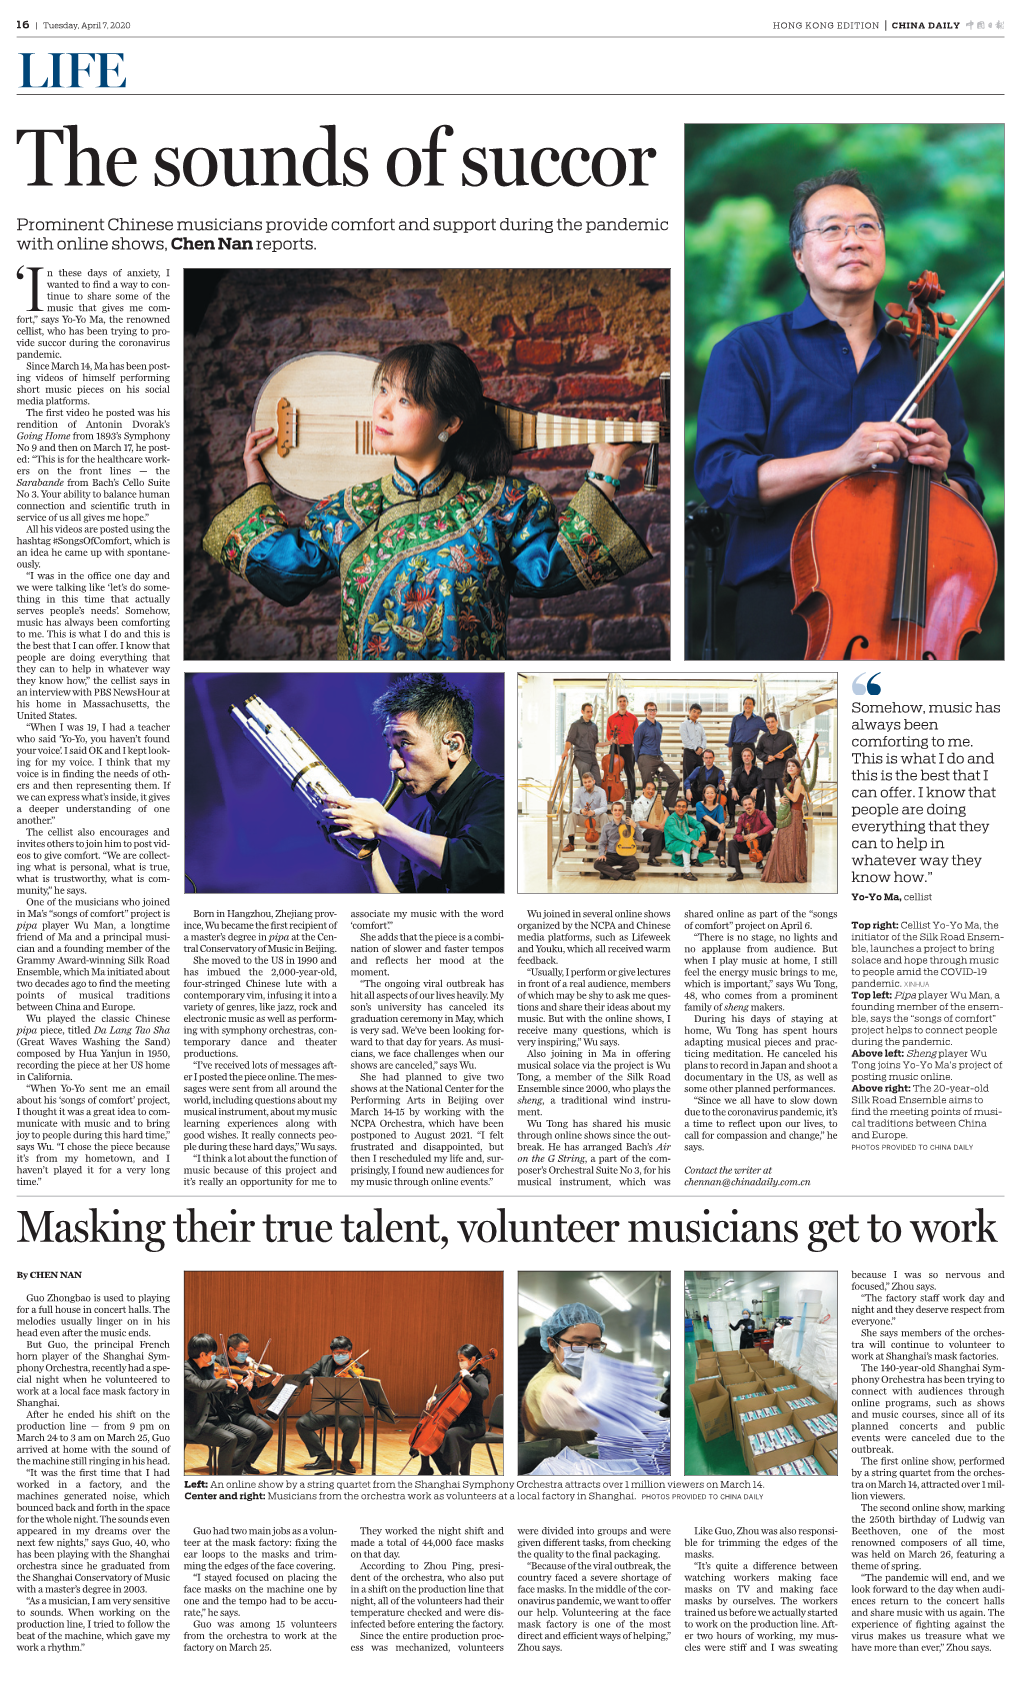 Masking Their True Talent, Volunteer Musicians Get to Work